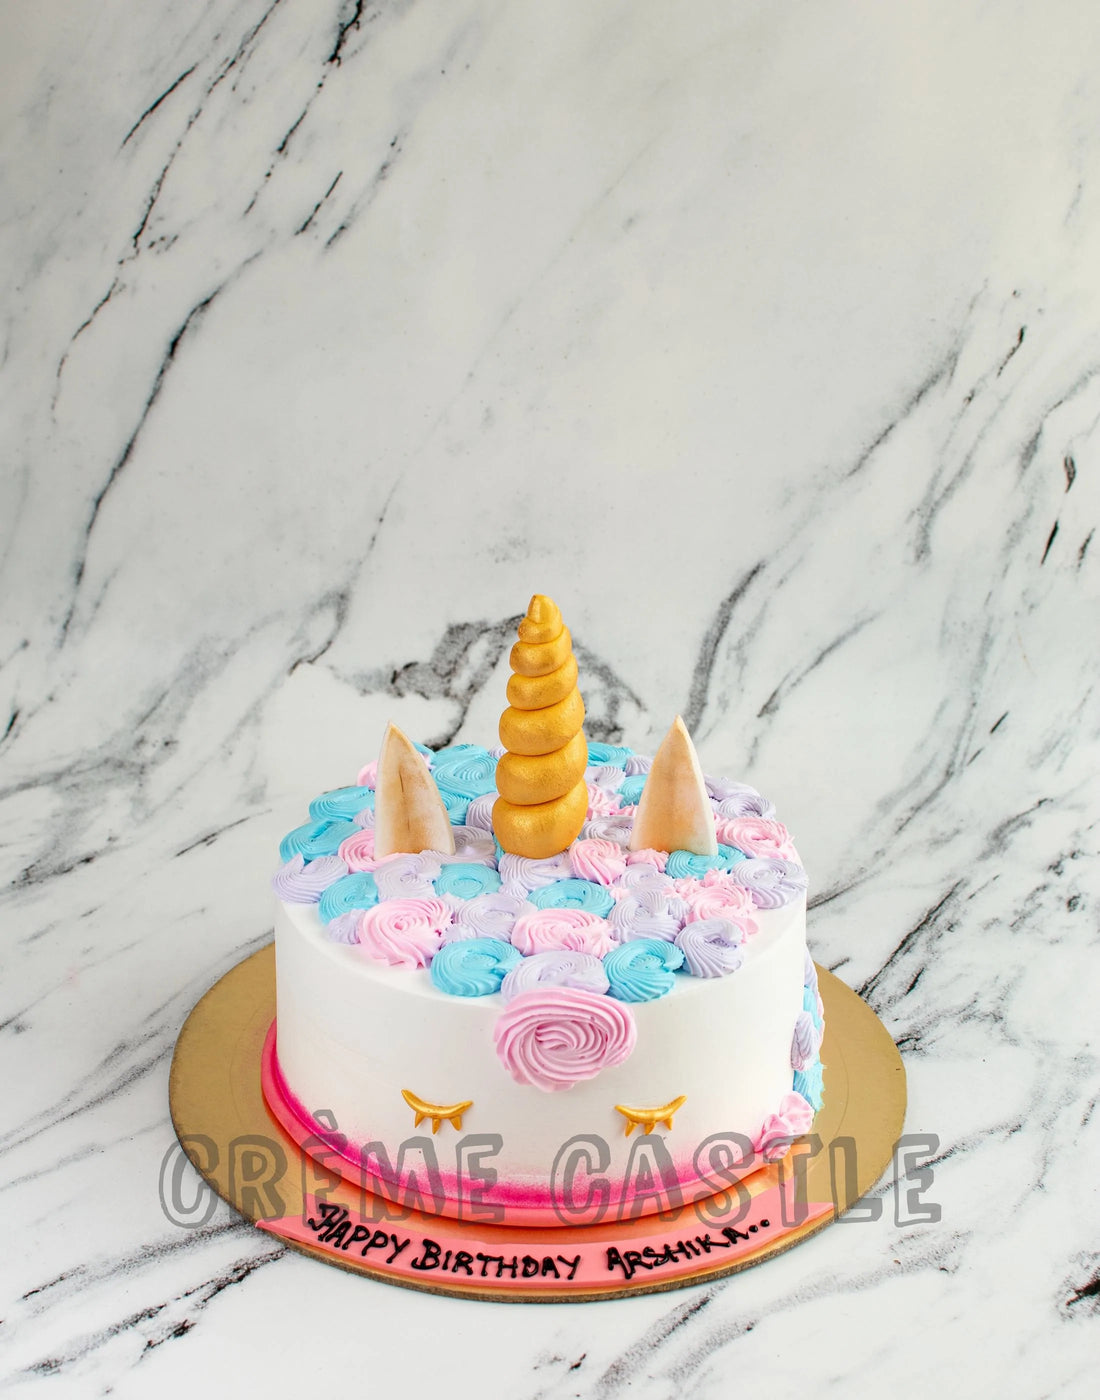 Customized Cakes for Girls - Unicorn Theme Cake - Customized Cake in Noida